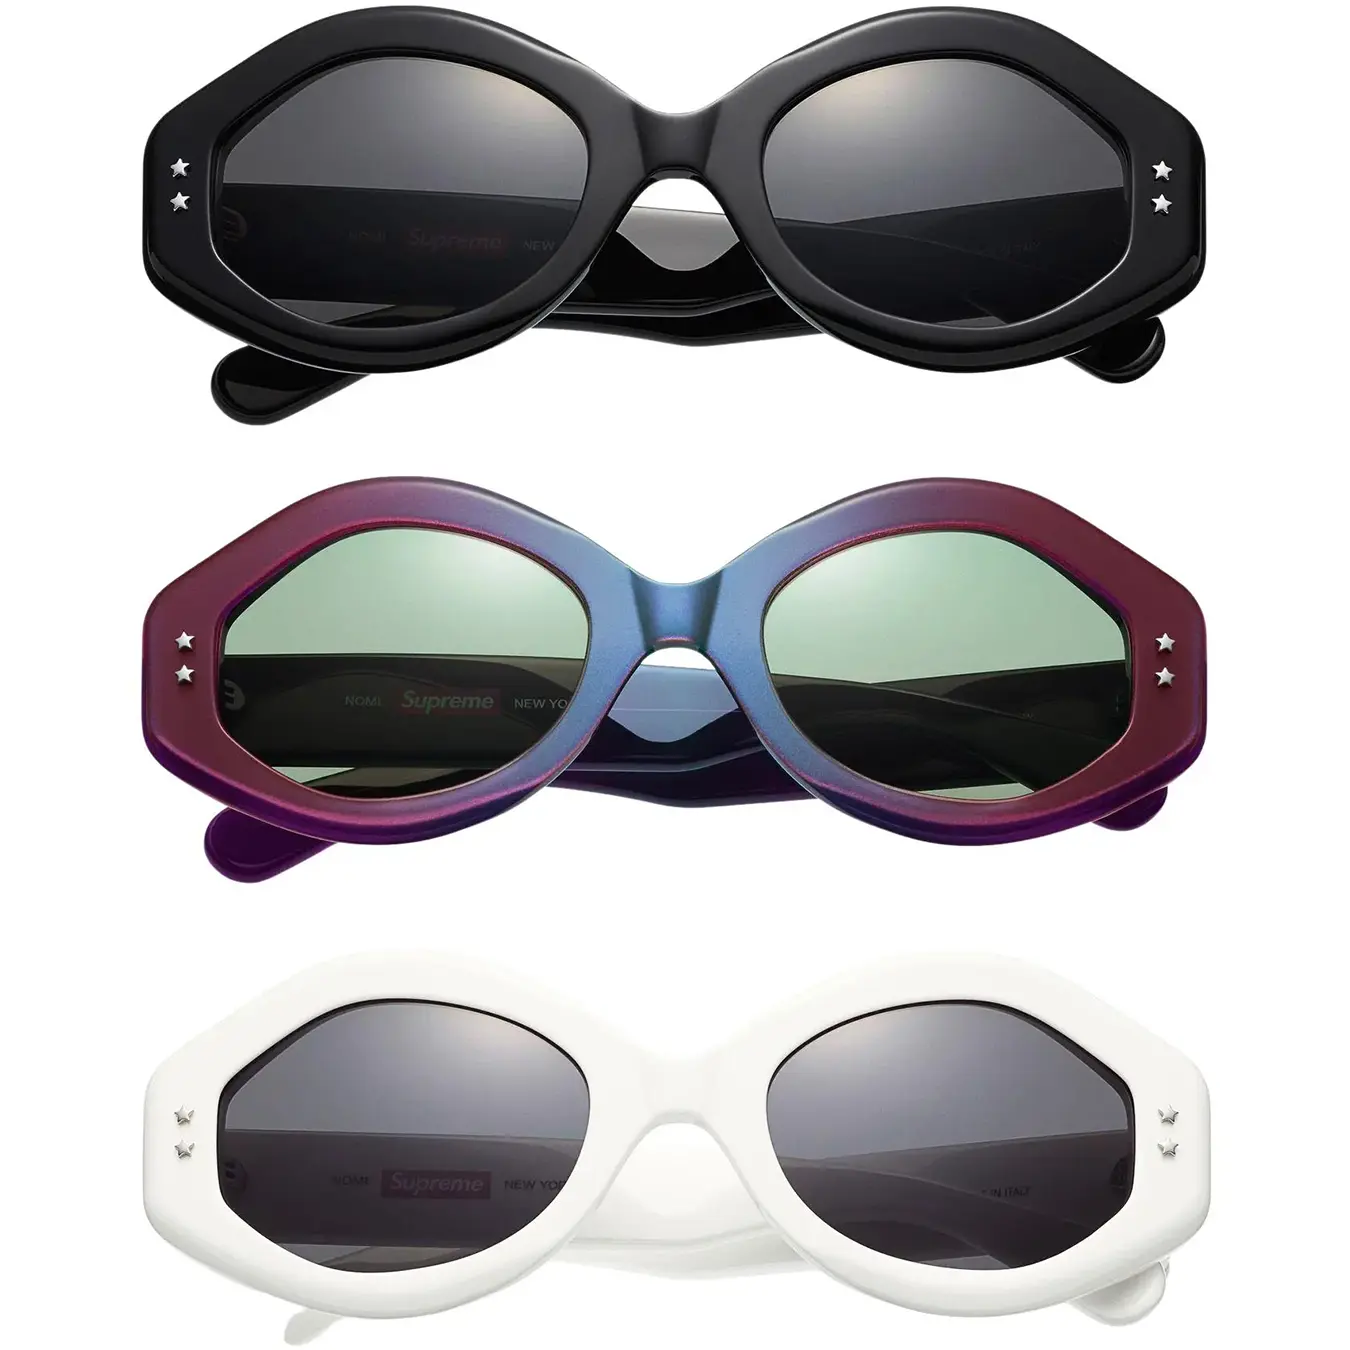 Supreme Nomi Sunglasses "Purple"